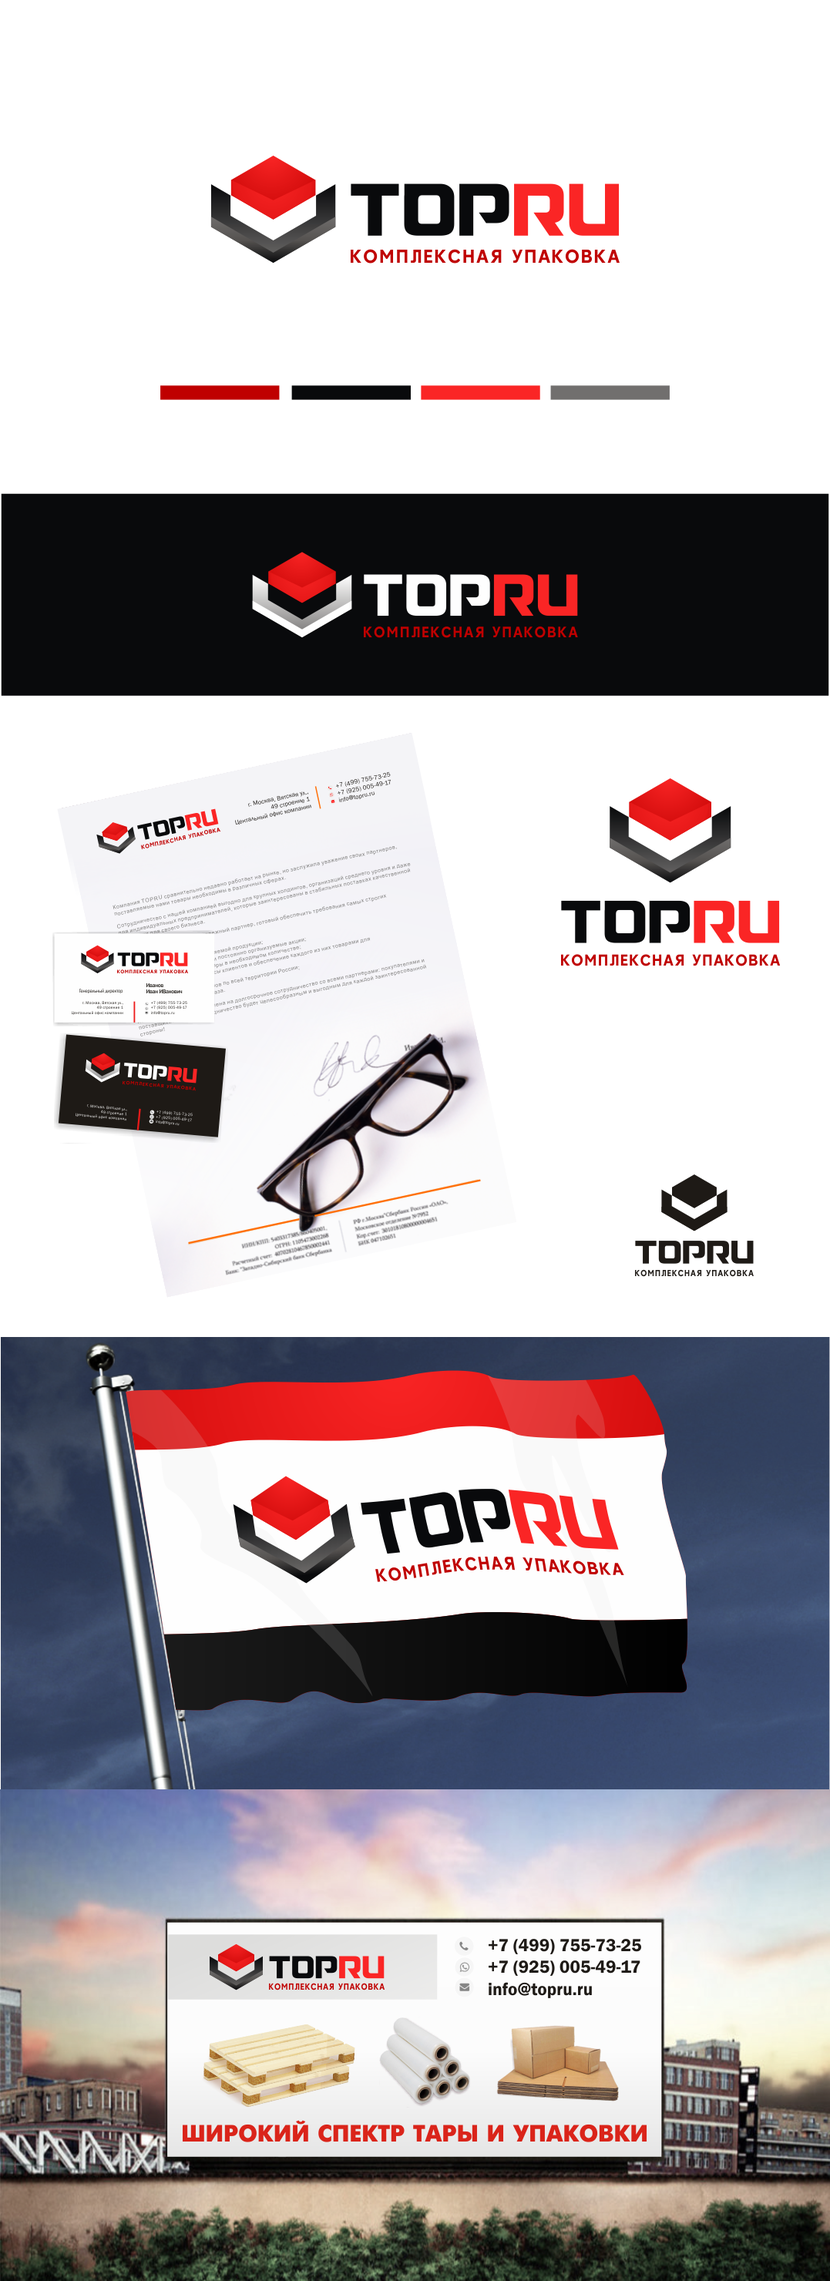 + - Разработка логотипа и фирменого стиля компании TopRu